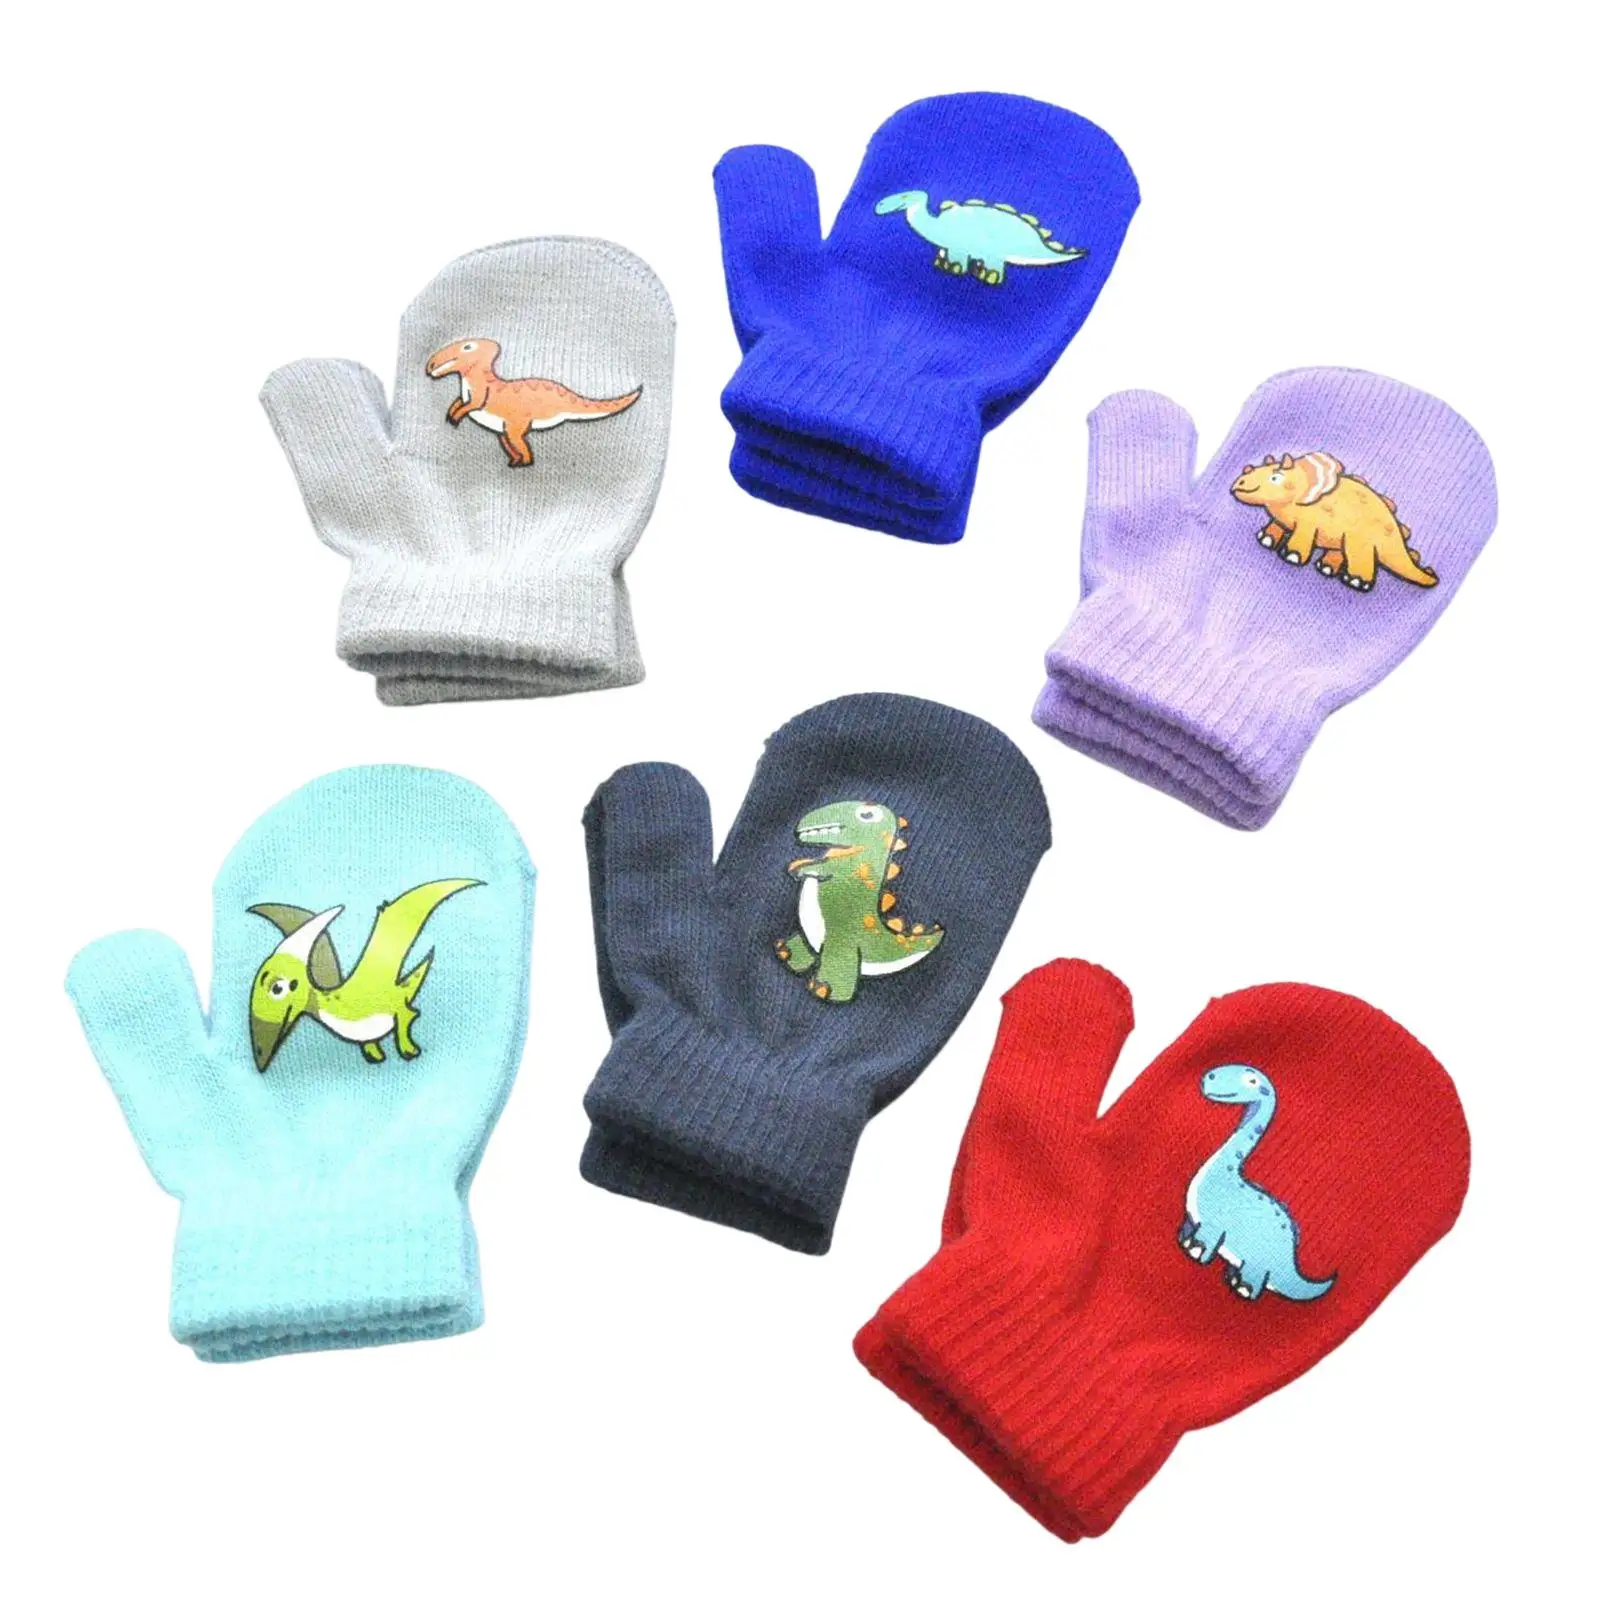 6x Children Winter Gloves Dinosaurs Pattern Full Fingers for Boys Girls Soft